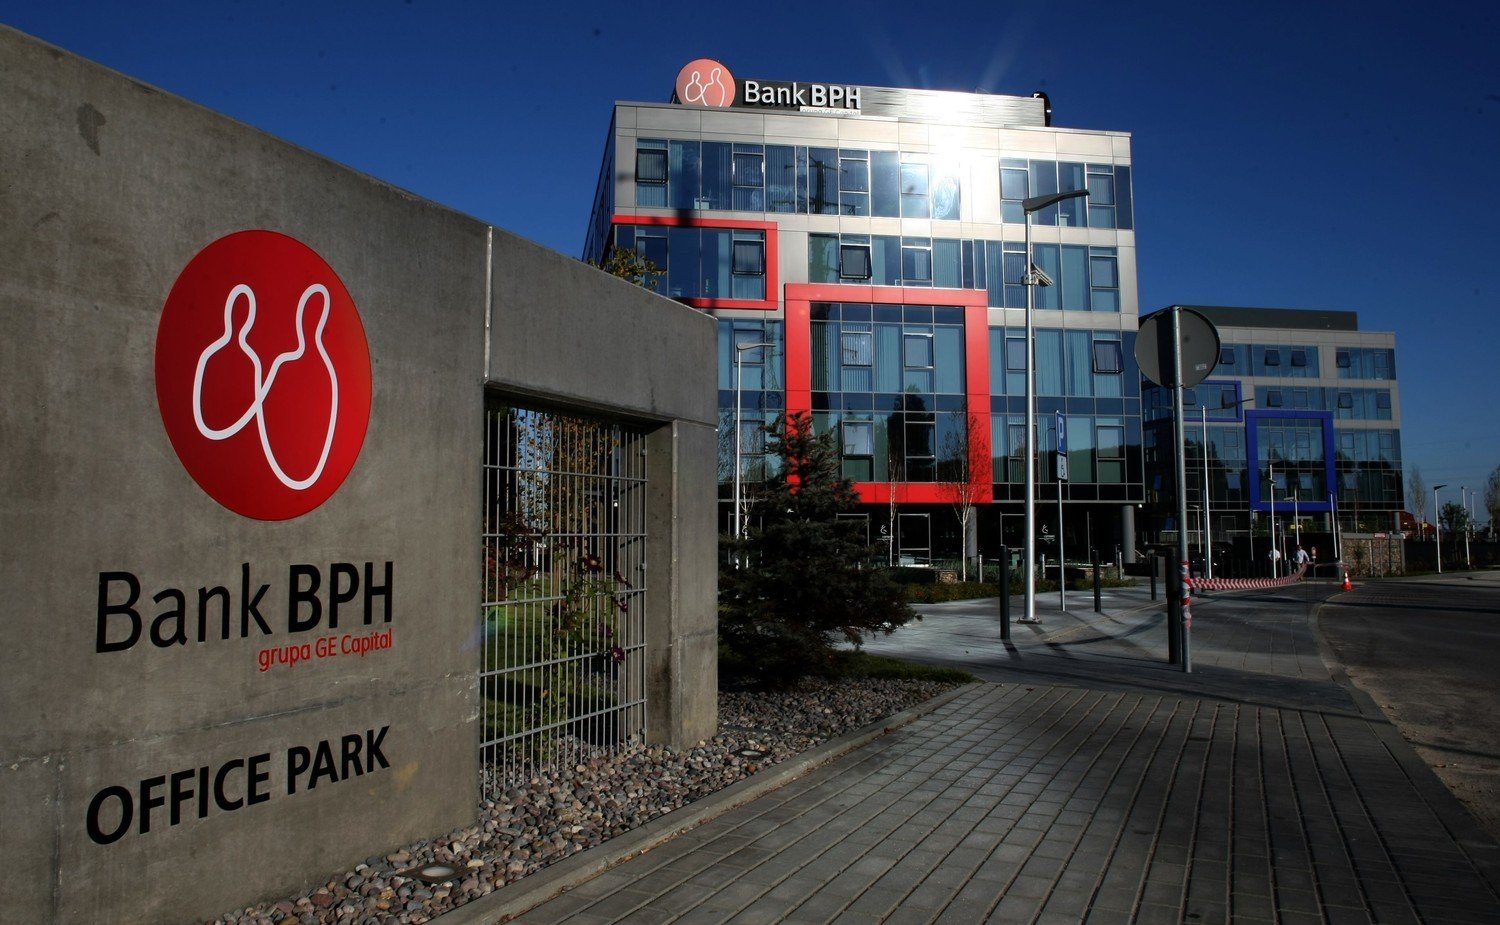 Bank BPH ma nową siedzibę w Gdańsku Jasieniu. Otwarto kompleks biurowy banku  [ZDJĘCIA] | Gdańsk Nasze Miasto